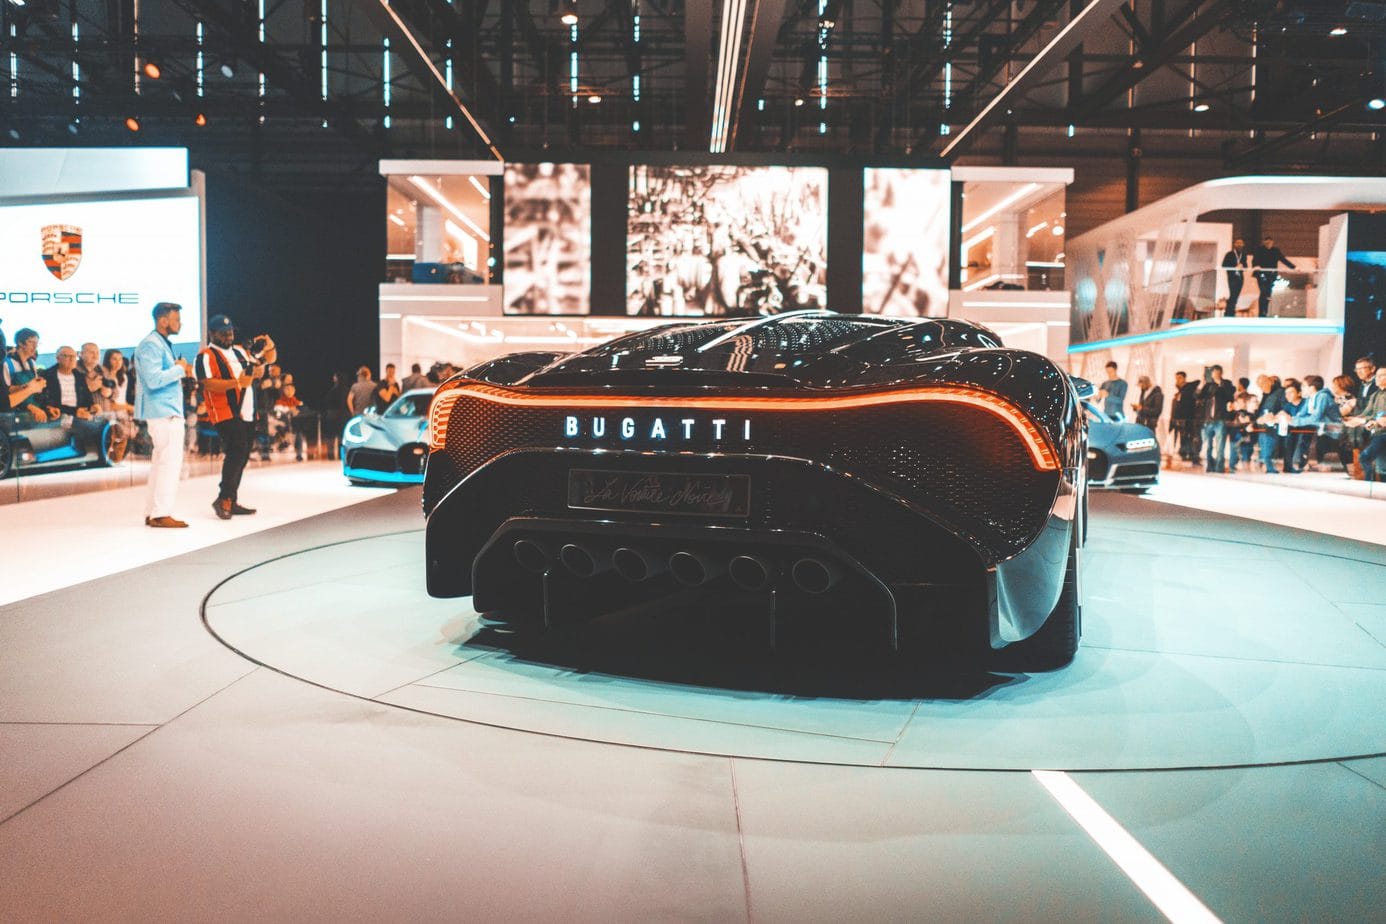 Z powodu Bugatti zawrzało w sieci. Ten supersamochód rozpala wyobraźnie